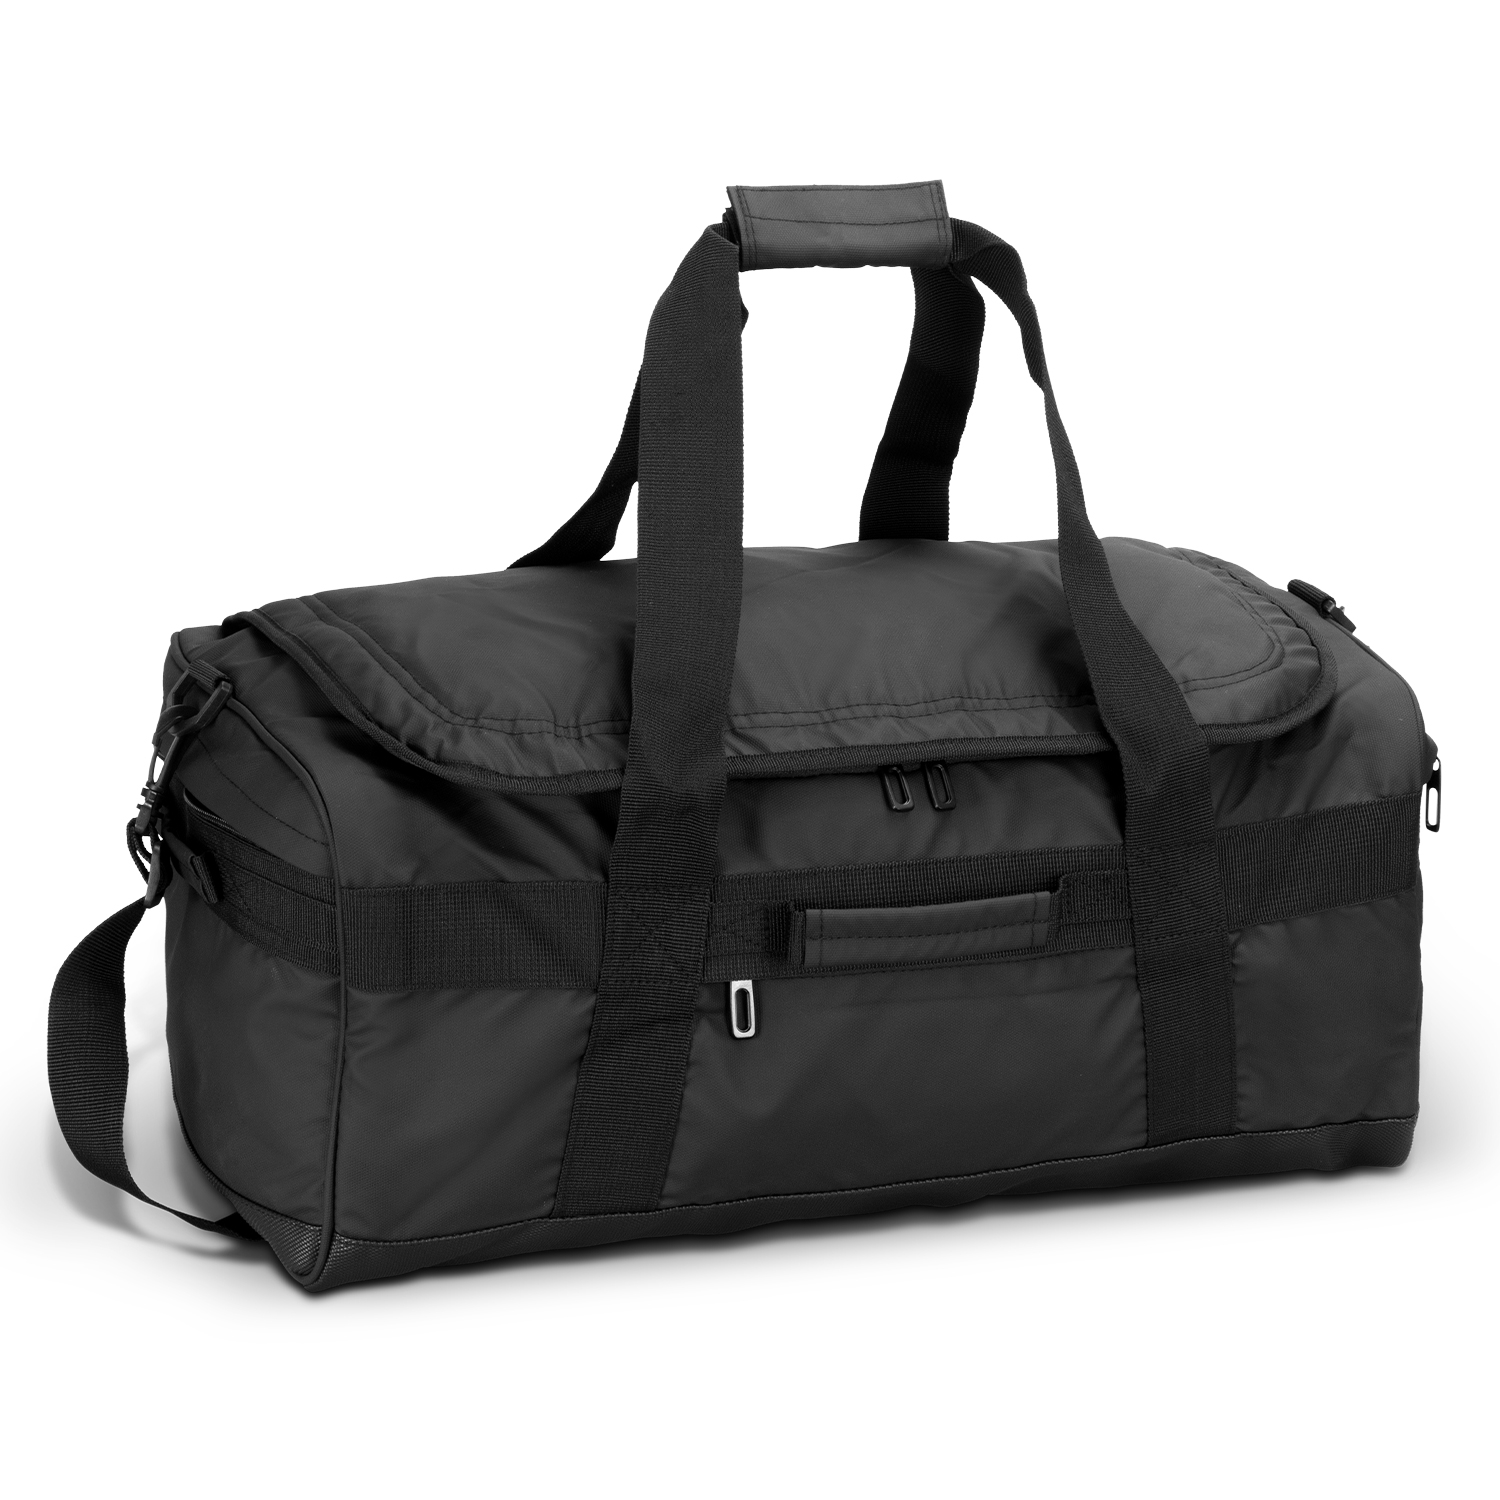 TRENDS | Aquinas 50L Duffle Bag